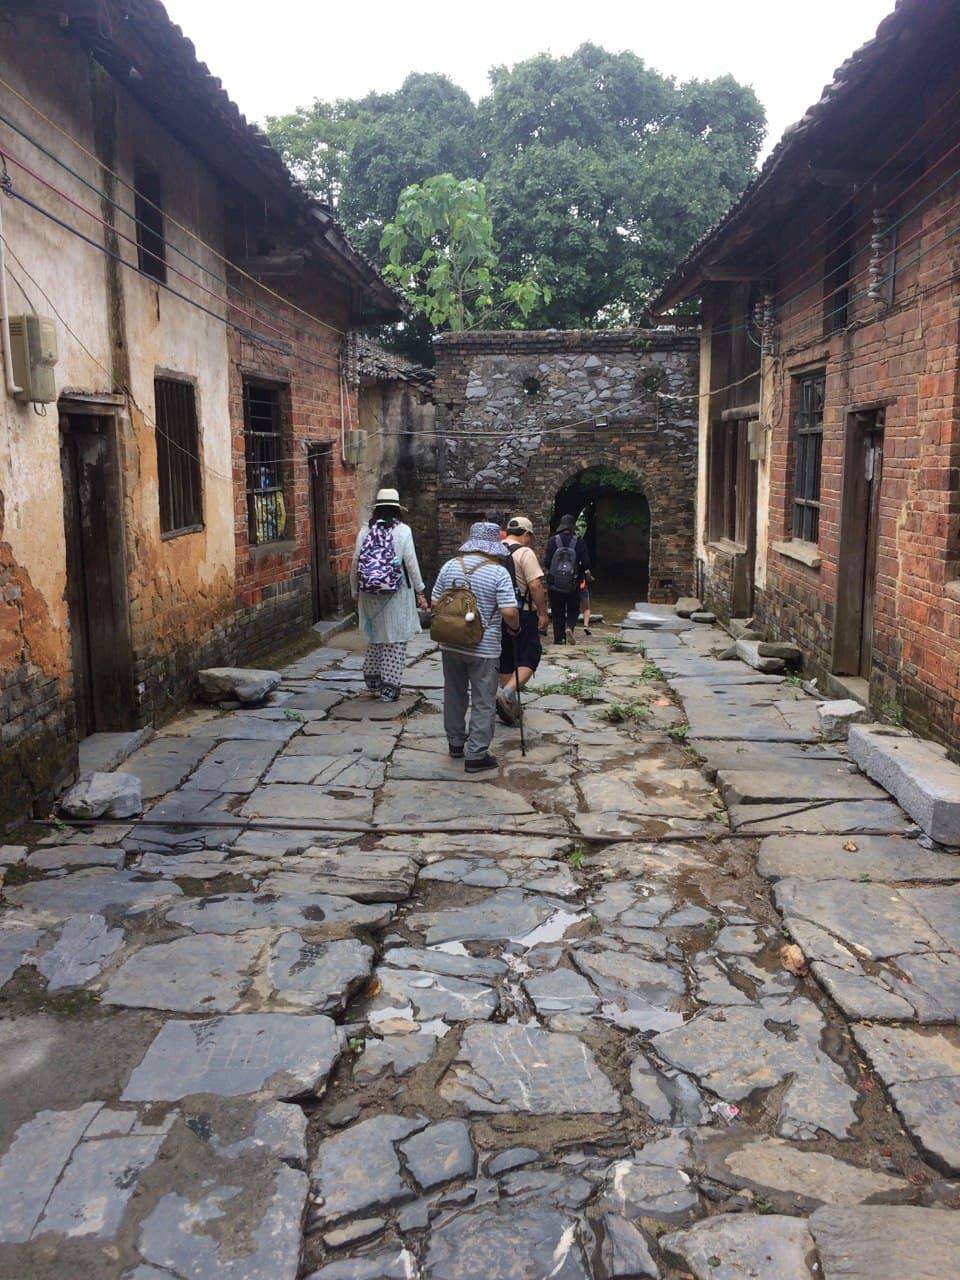 🥦Mizuo´s Travel Blog🥦 No.6: Visiting a local village in Qingyuan, China, 2017